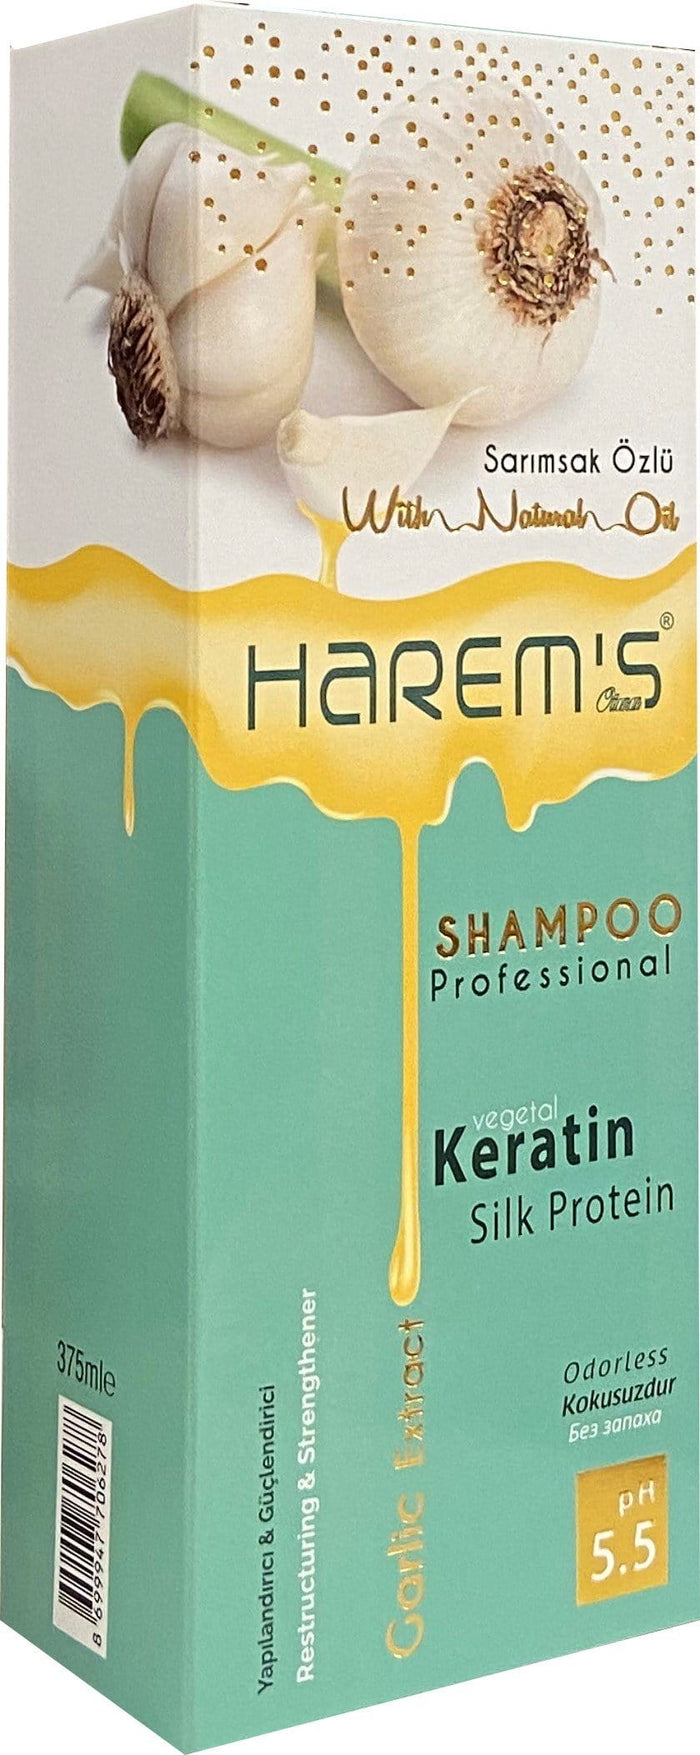 Harem's Garlic Shampoo 350 ml